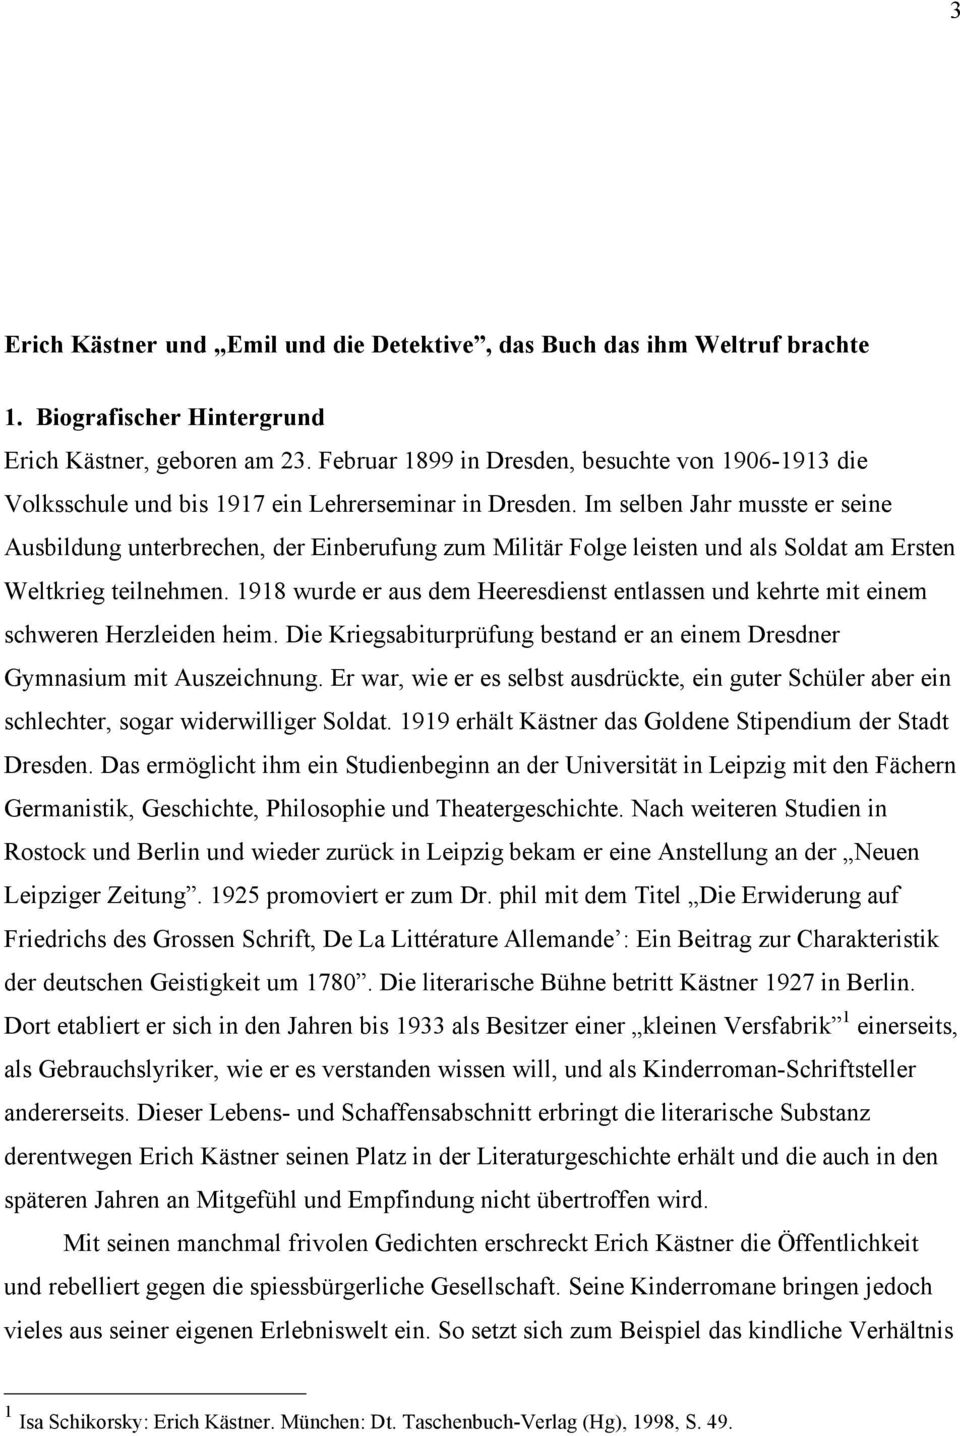 Erich Kastner Und Emil Und Die Detektive Das Buch Das Ihm Weltruf Brachte Pdf Free Download